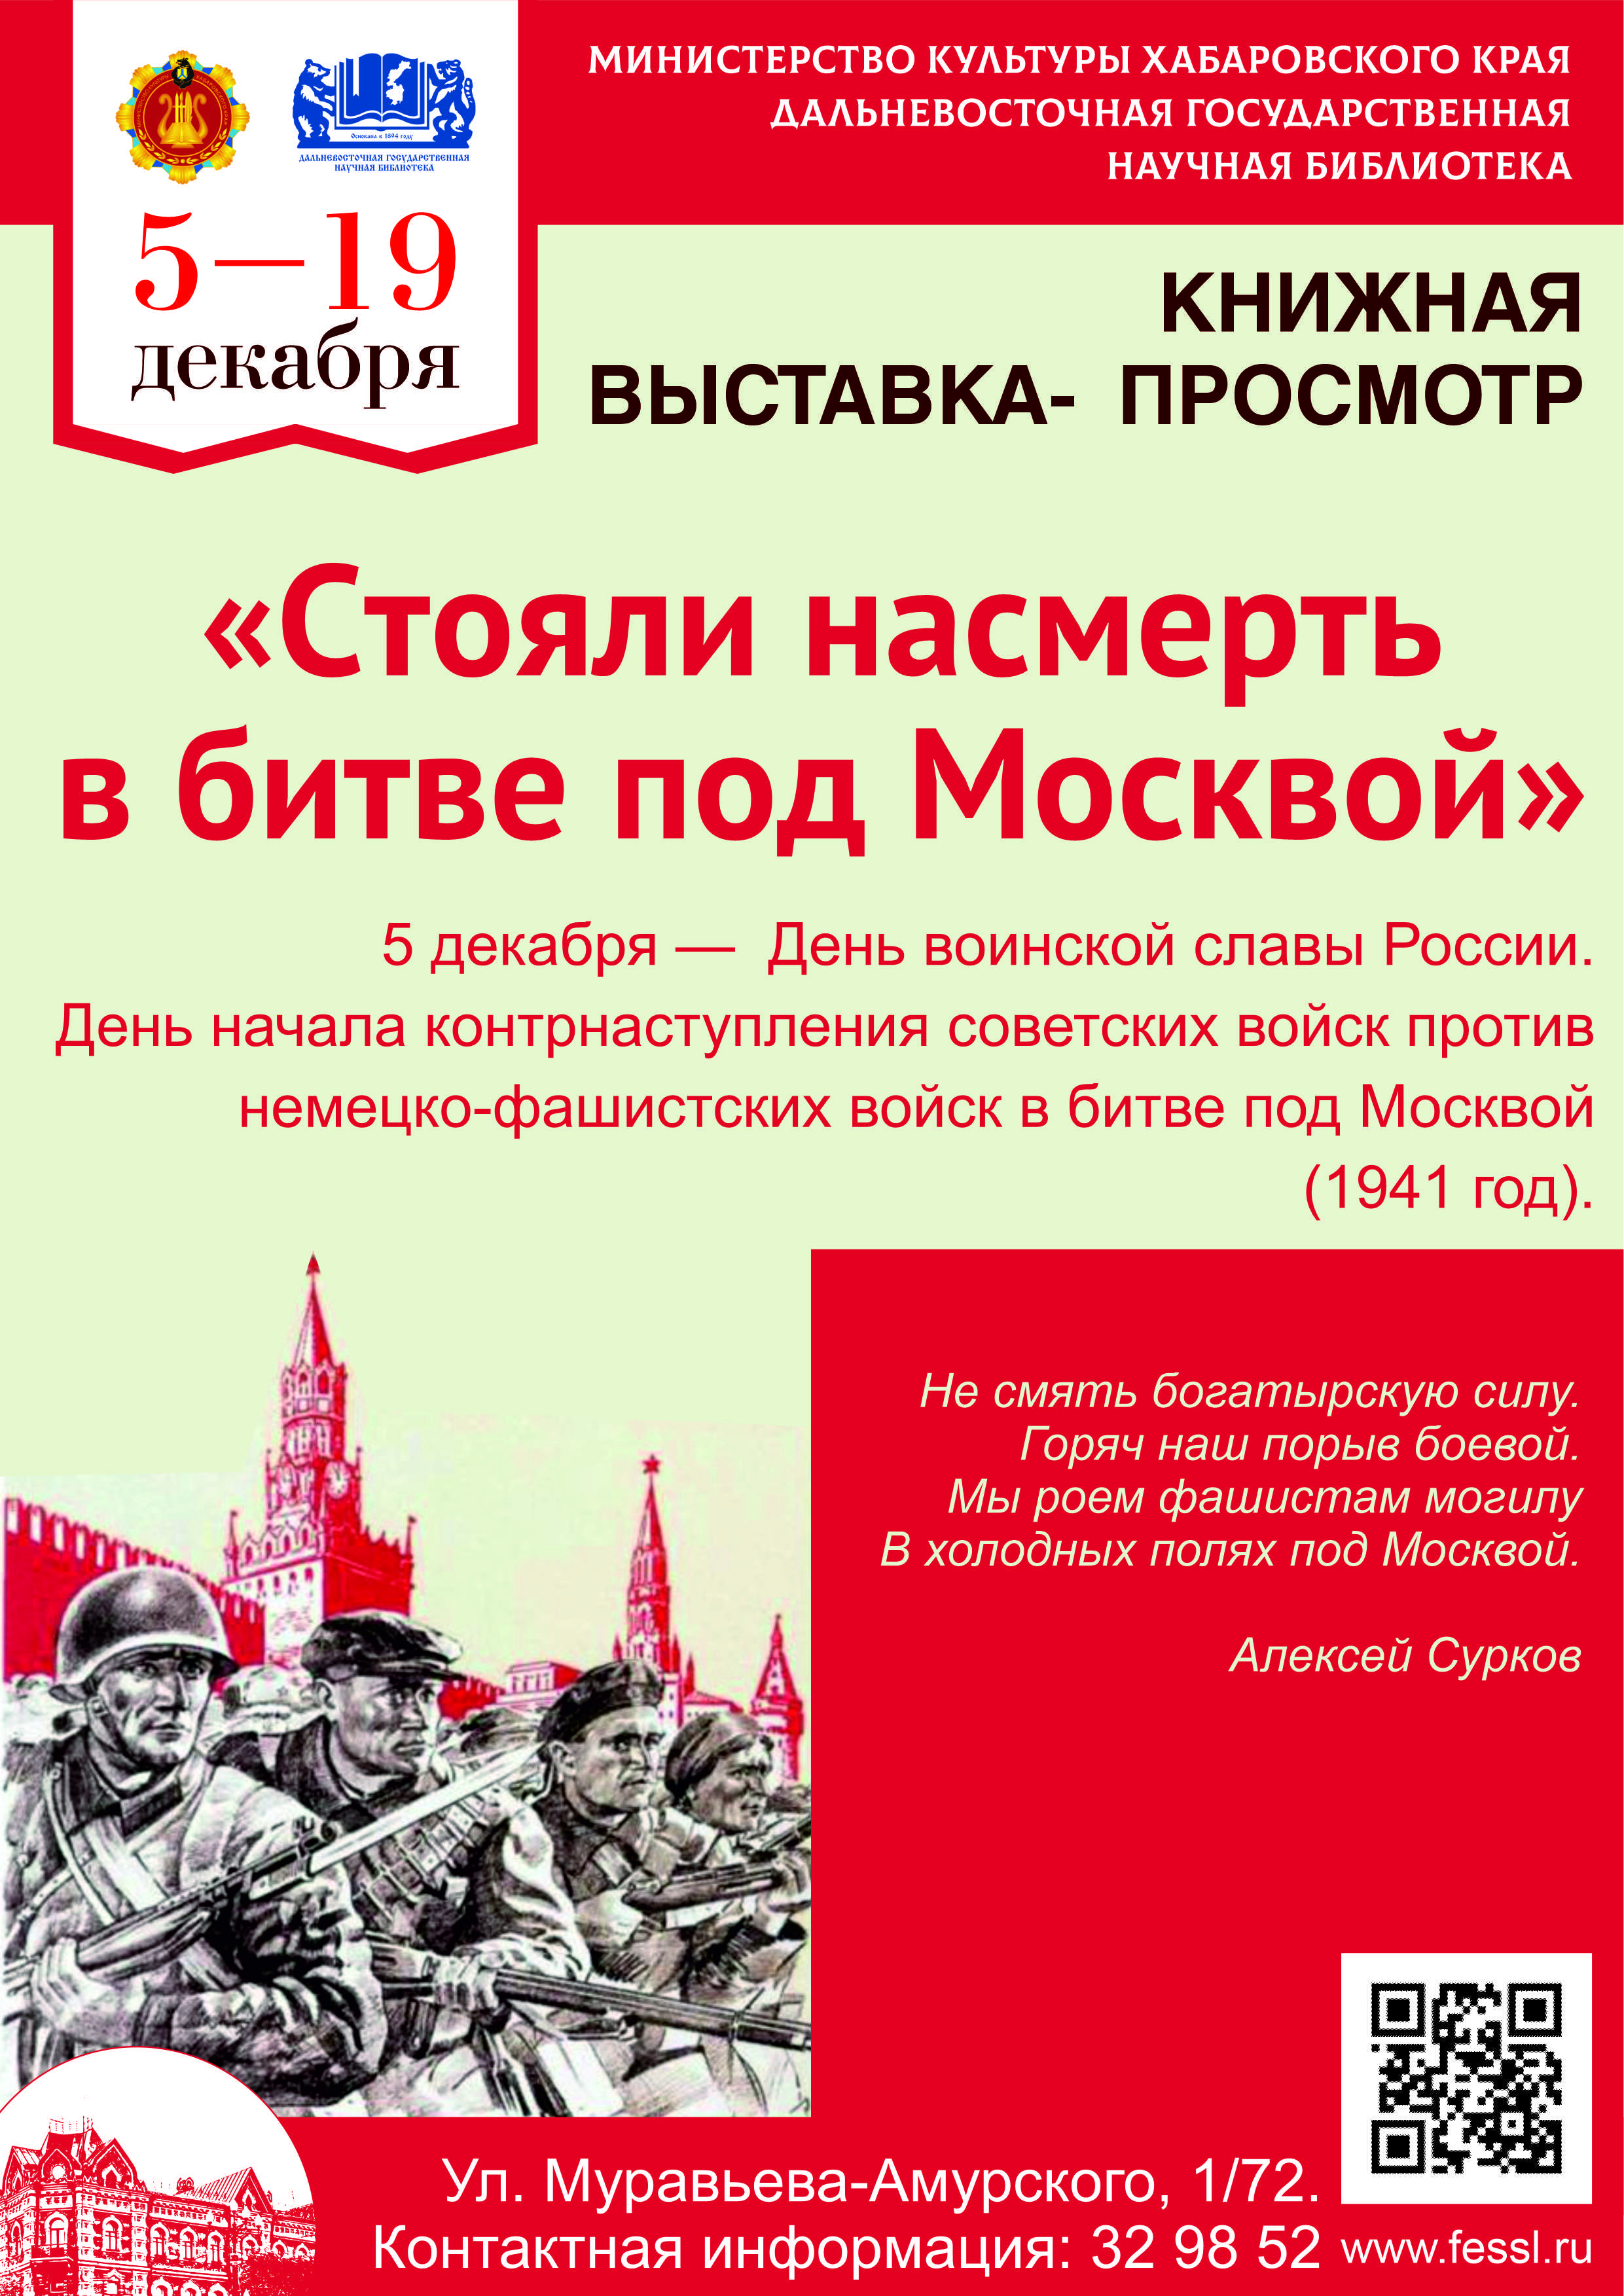 Битва за Москву – одно из величайших событий Великой Отечественной войны.